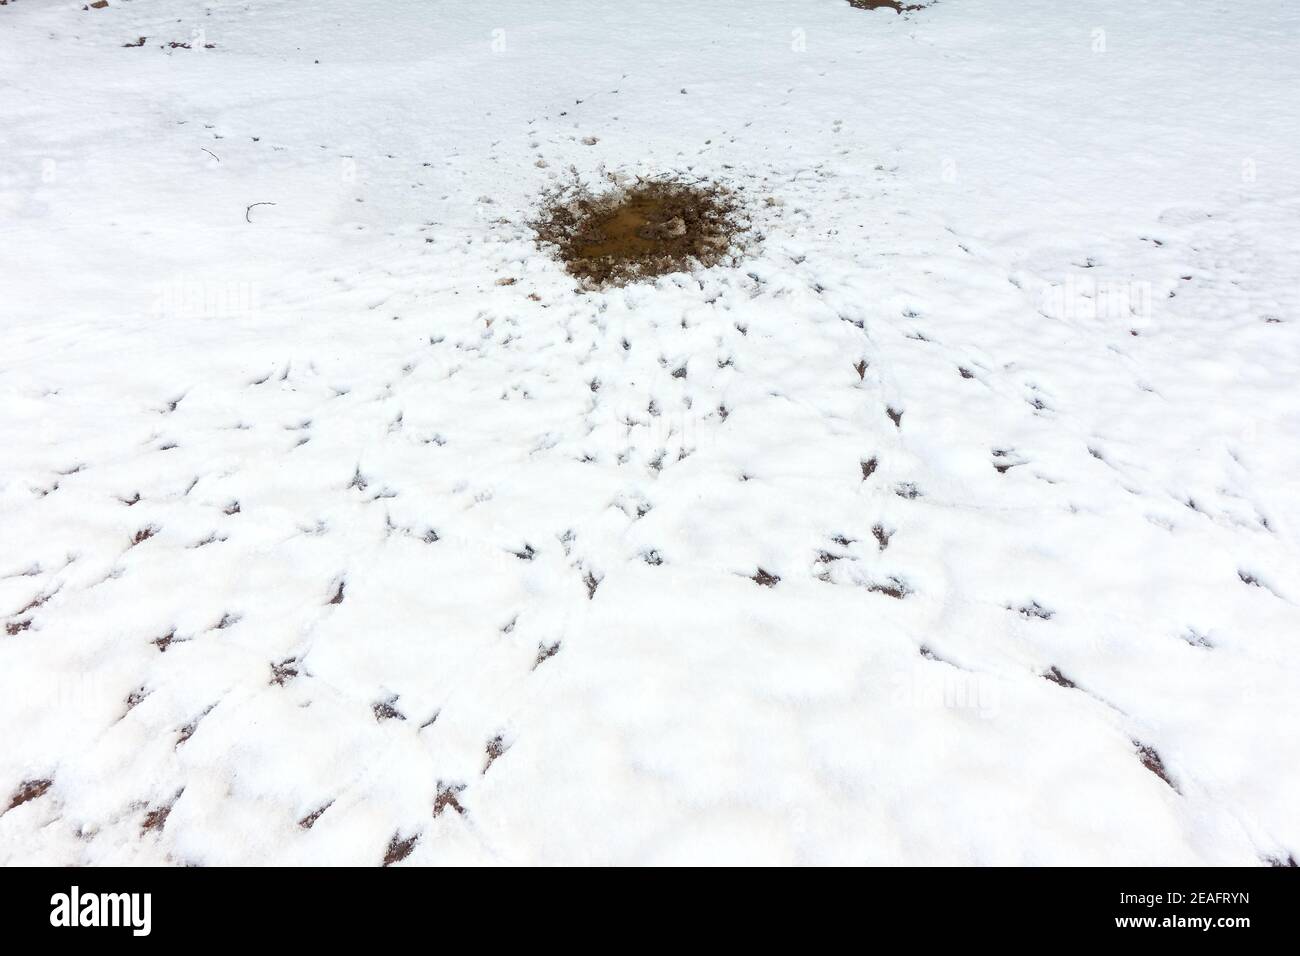 Anzeichen von Vögeln, die sich um einen geschmolzenen Fleck herum füttern und trinken Von Schnee, wie durch Fußabdrücke und Spuren in der belegt Winterliche Bedingungen Stockfoto